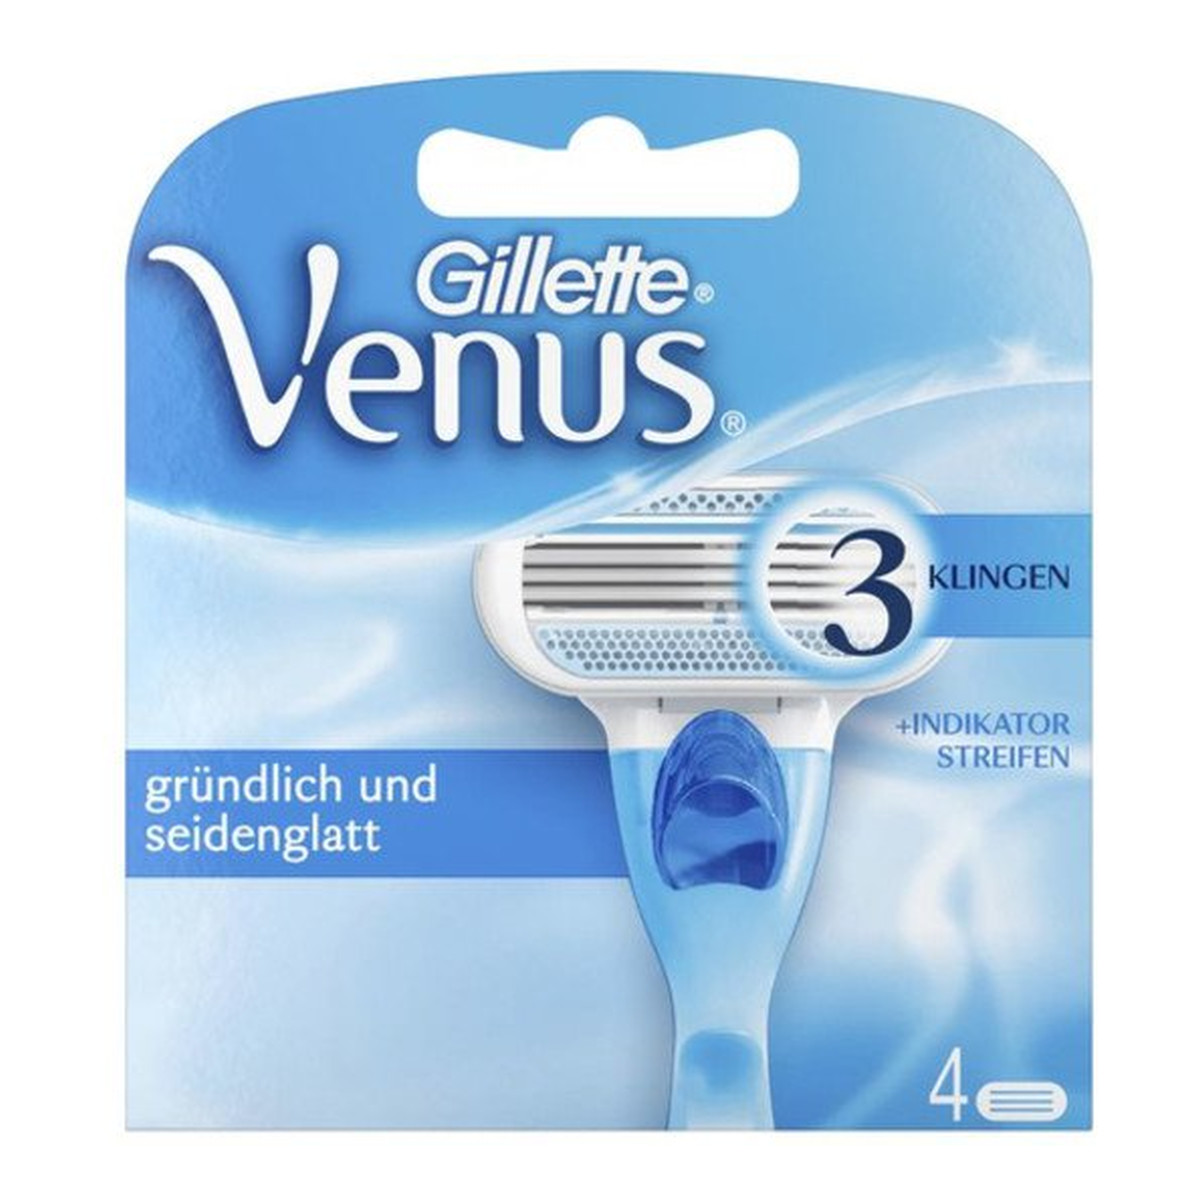 Gillette Venus 3 Klingen wymienne ostrza do maszynki do golenia dla kobiet 4szt